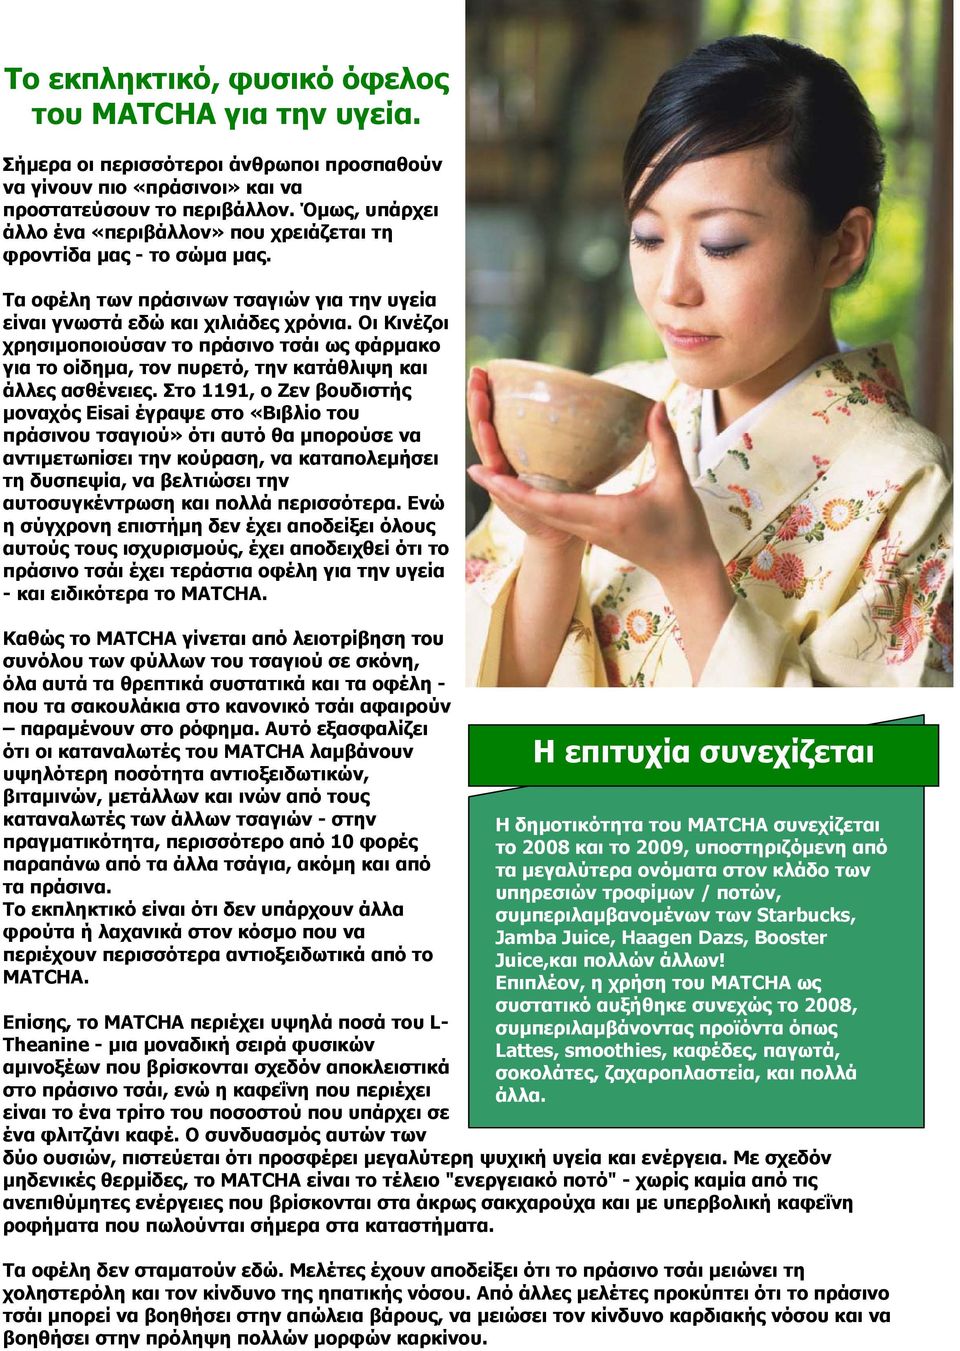 Οι Κινέζοι χρησιµοποιούσαν το πράσινο τσάι ως φάρµακο για το οίδηµα, τον πυρετό, την κατάθλιψη και άλλες ασθένειες.